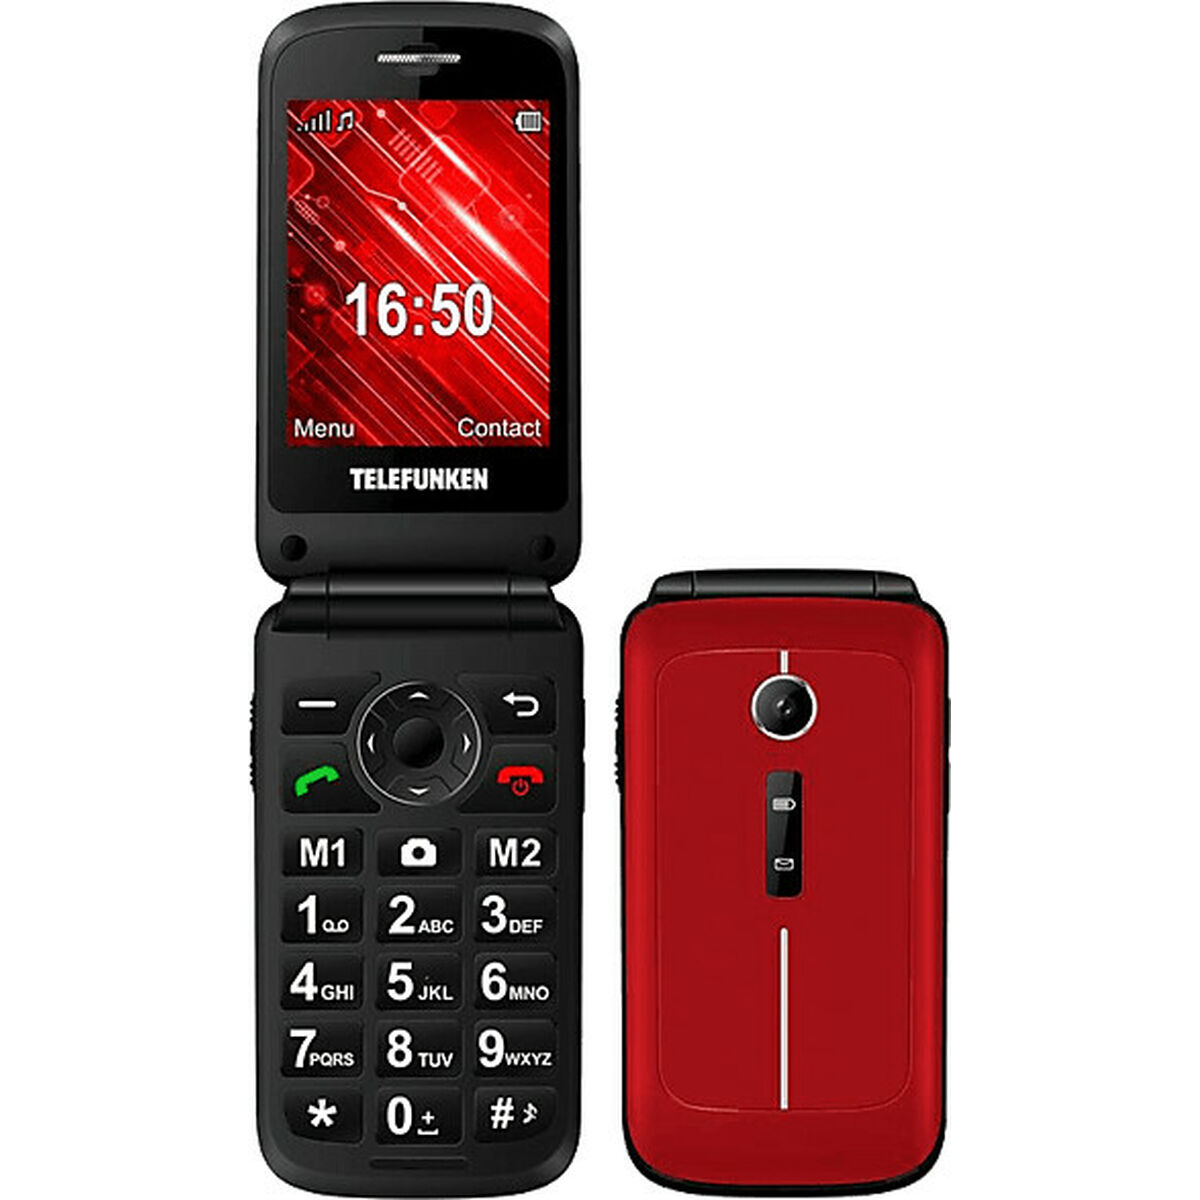 Mobiltelefon til ældre mennesker Telefunken S430 32 GB 2,8"